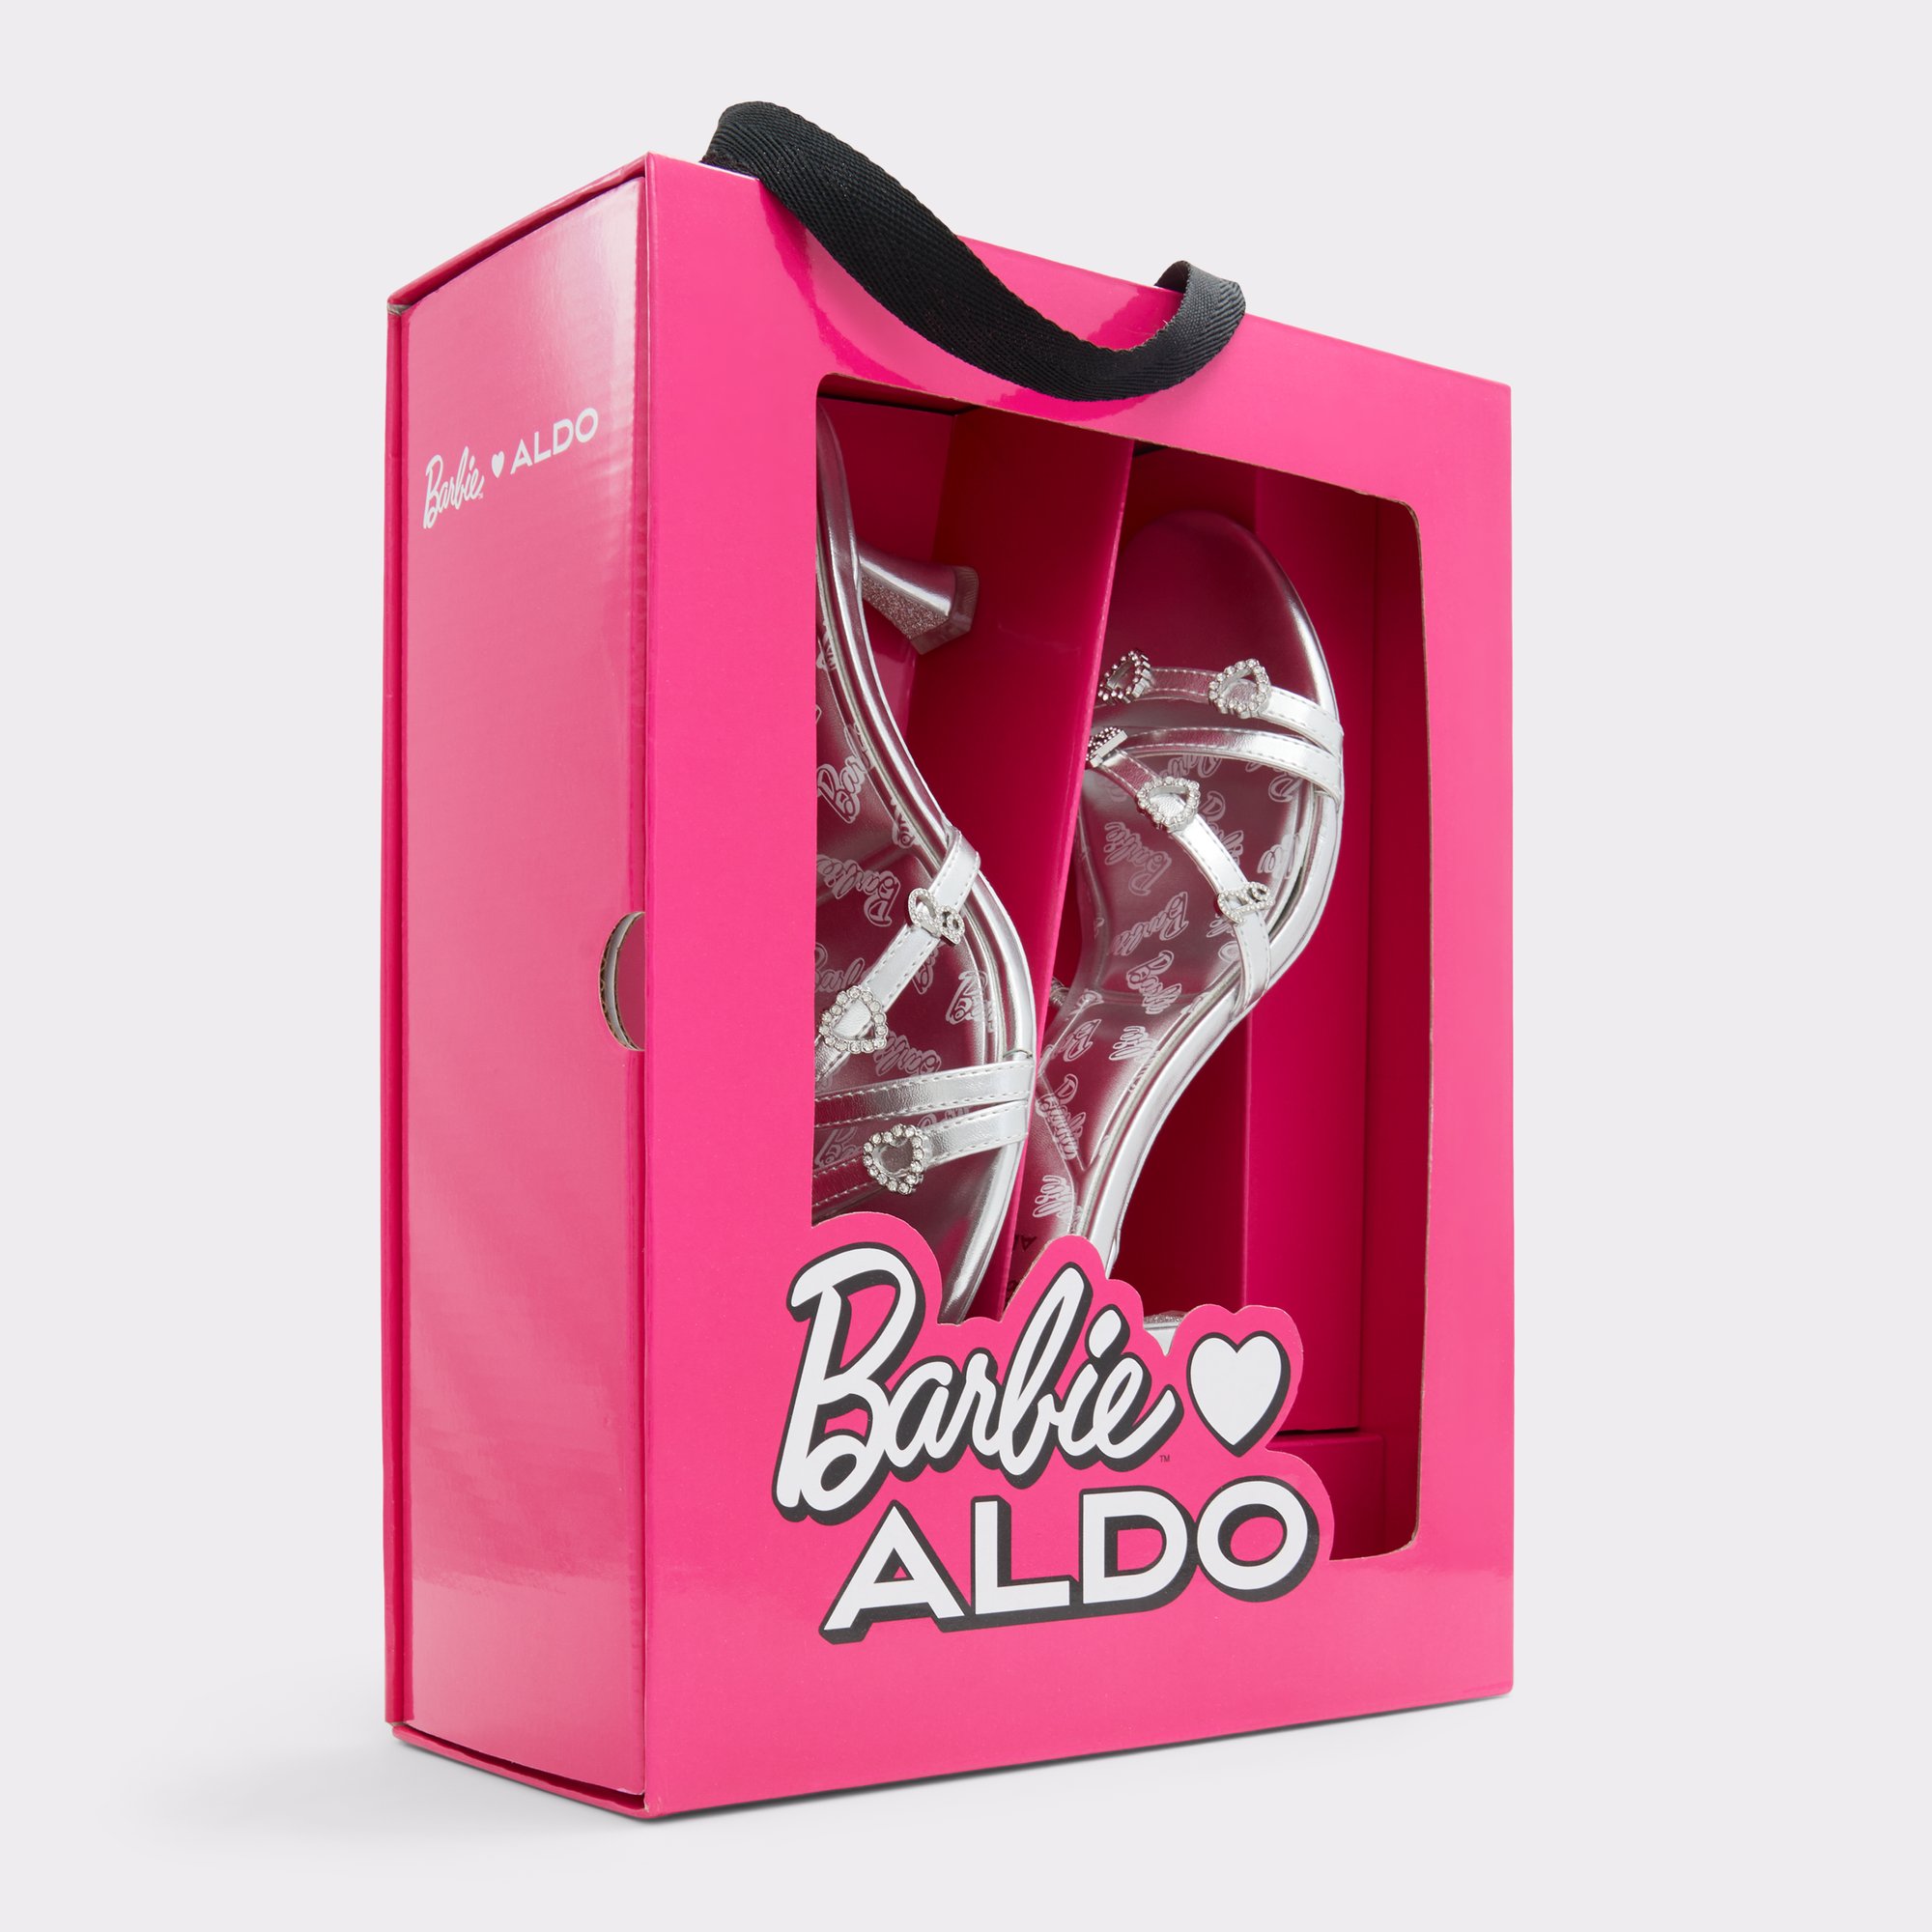 Barbie x Aldo Collection: Shop the Best Pieces